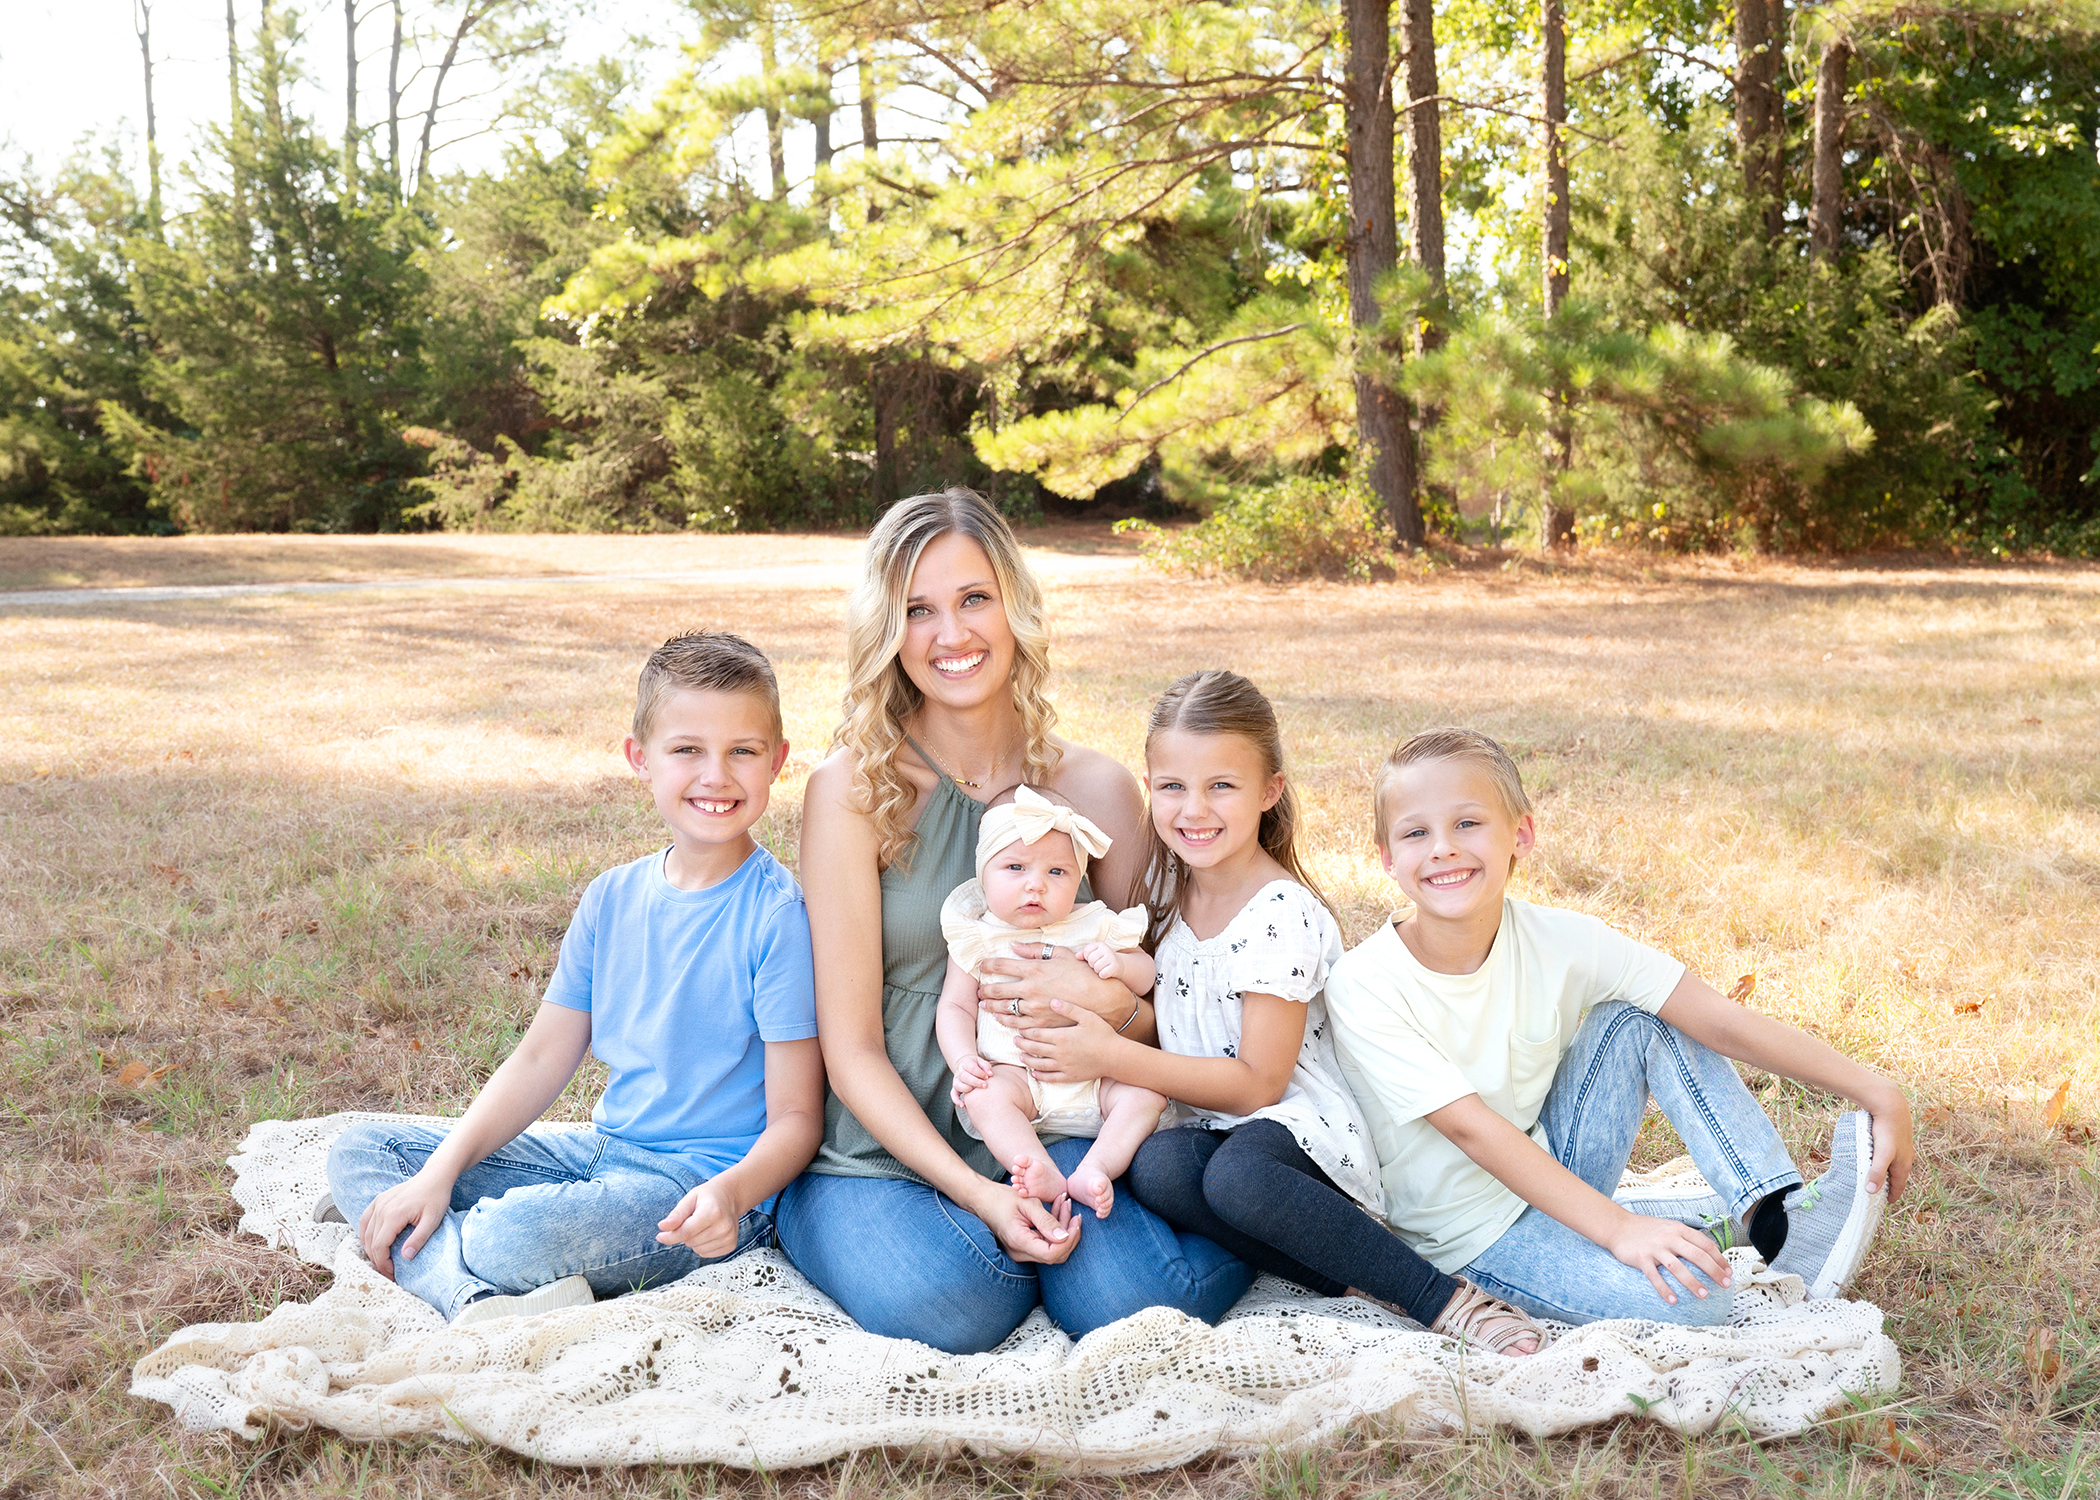 Family photos taken in Aubrey, Texas